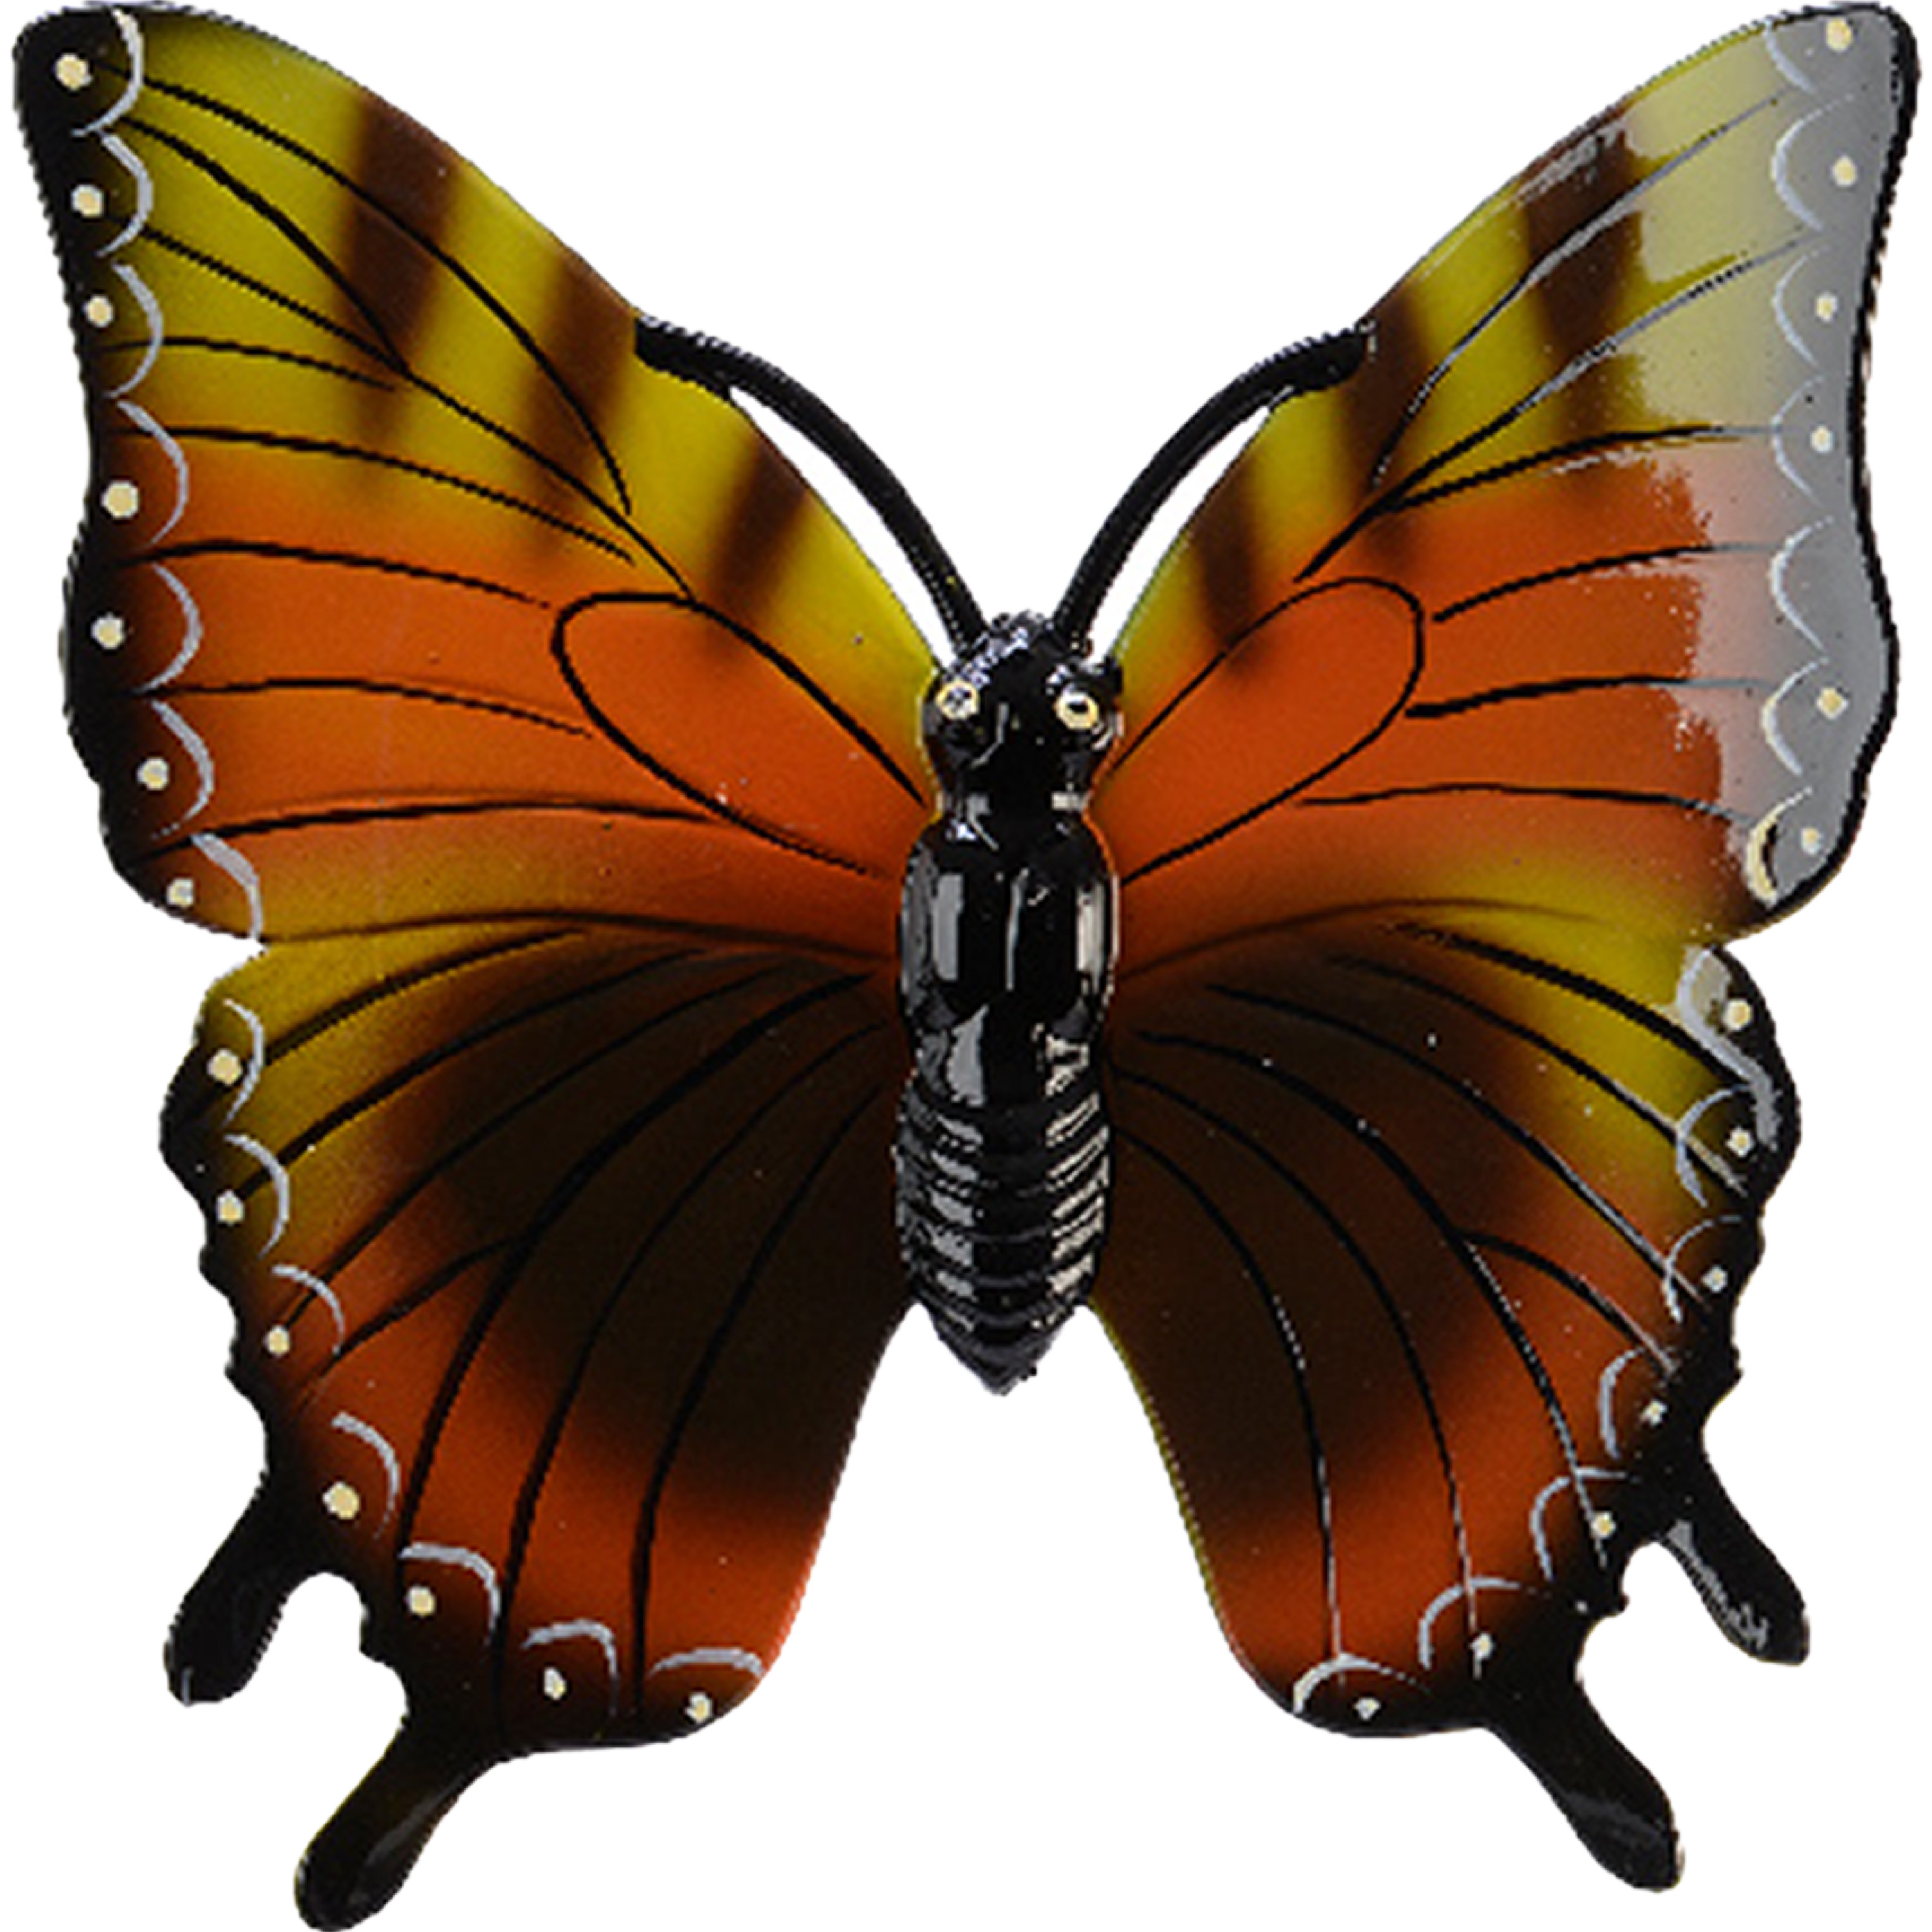 Tuin-schutting decoratie vlinder kunststof geeloranje 24 x 24 cm